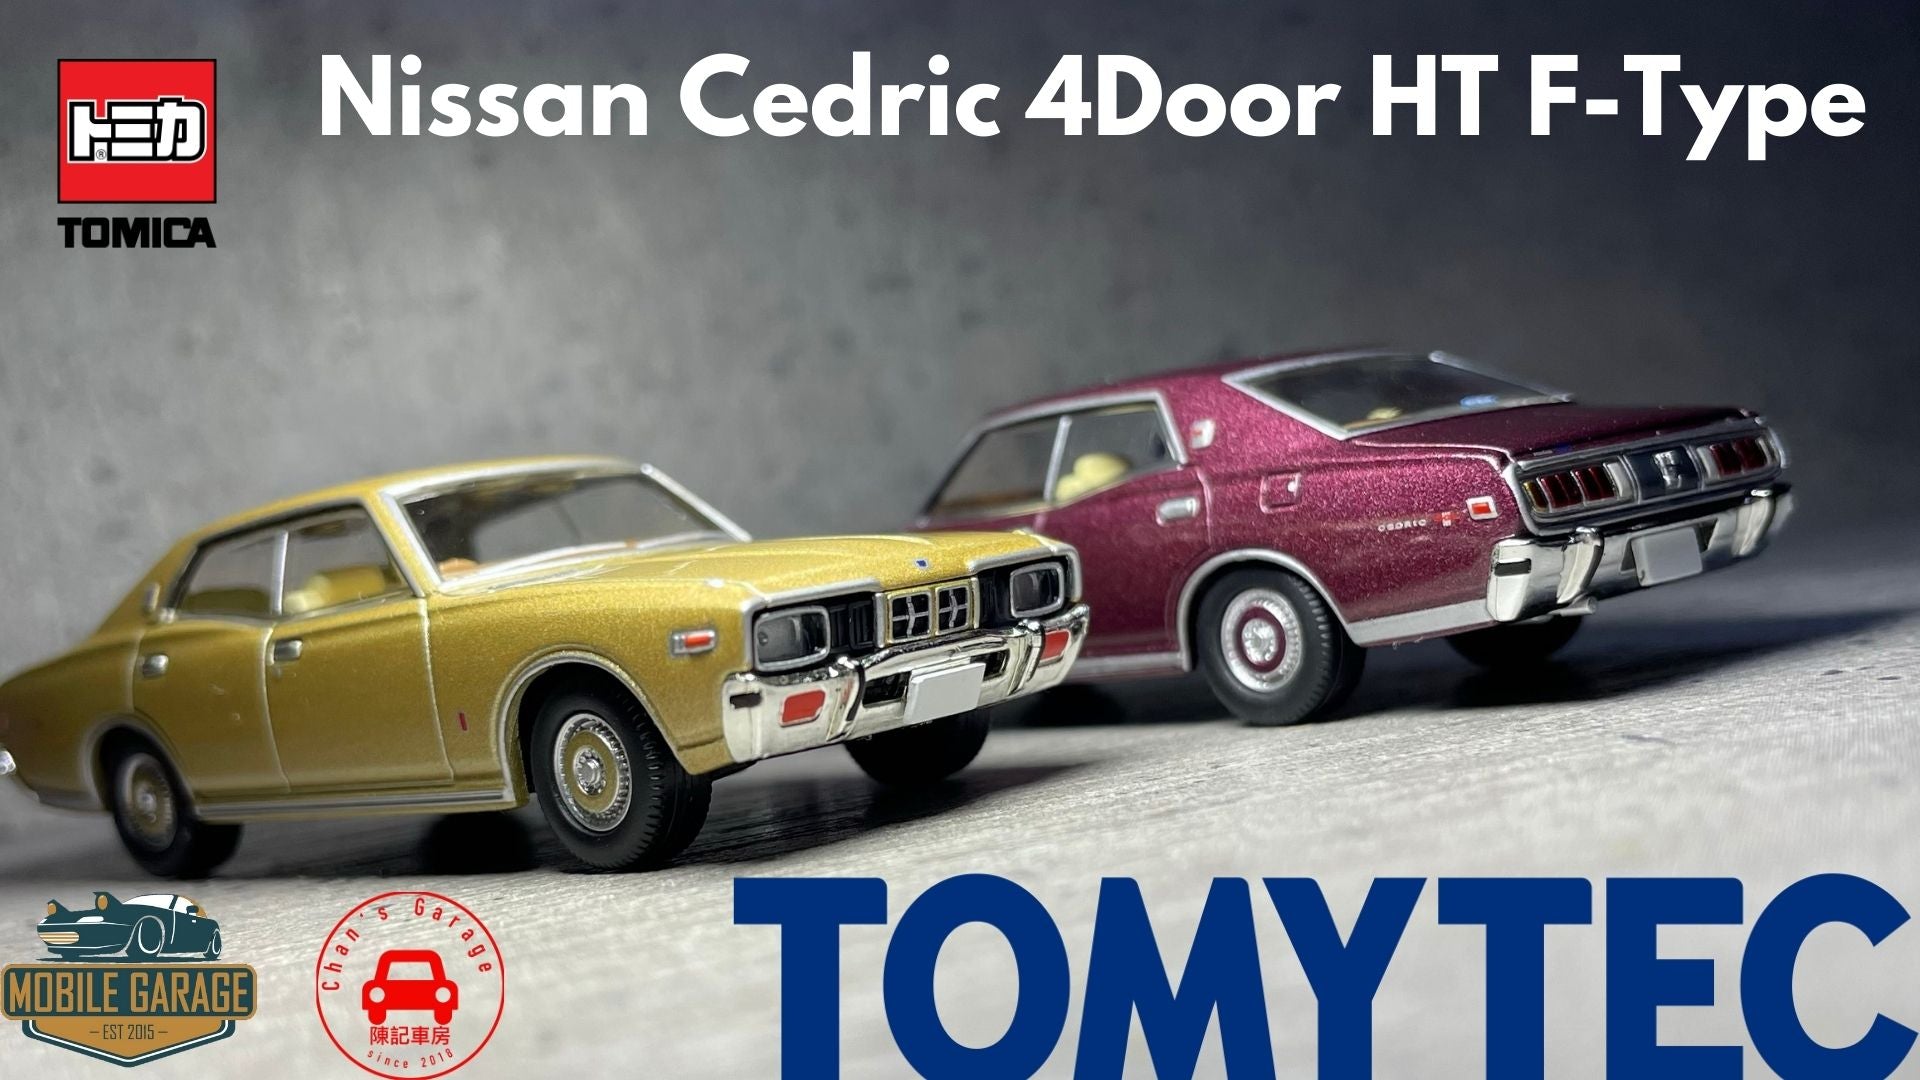 トミカ TomyTec Tomic Limited Vintage Neo LV-N250 a b Nissan Cedric